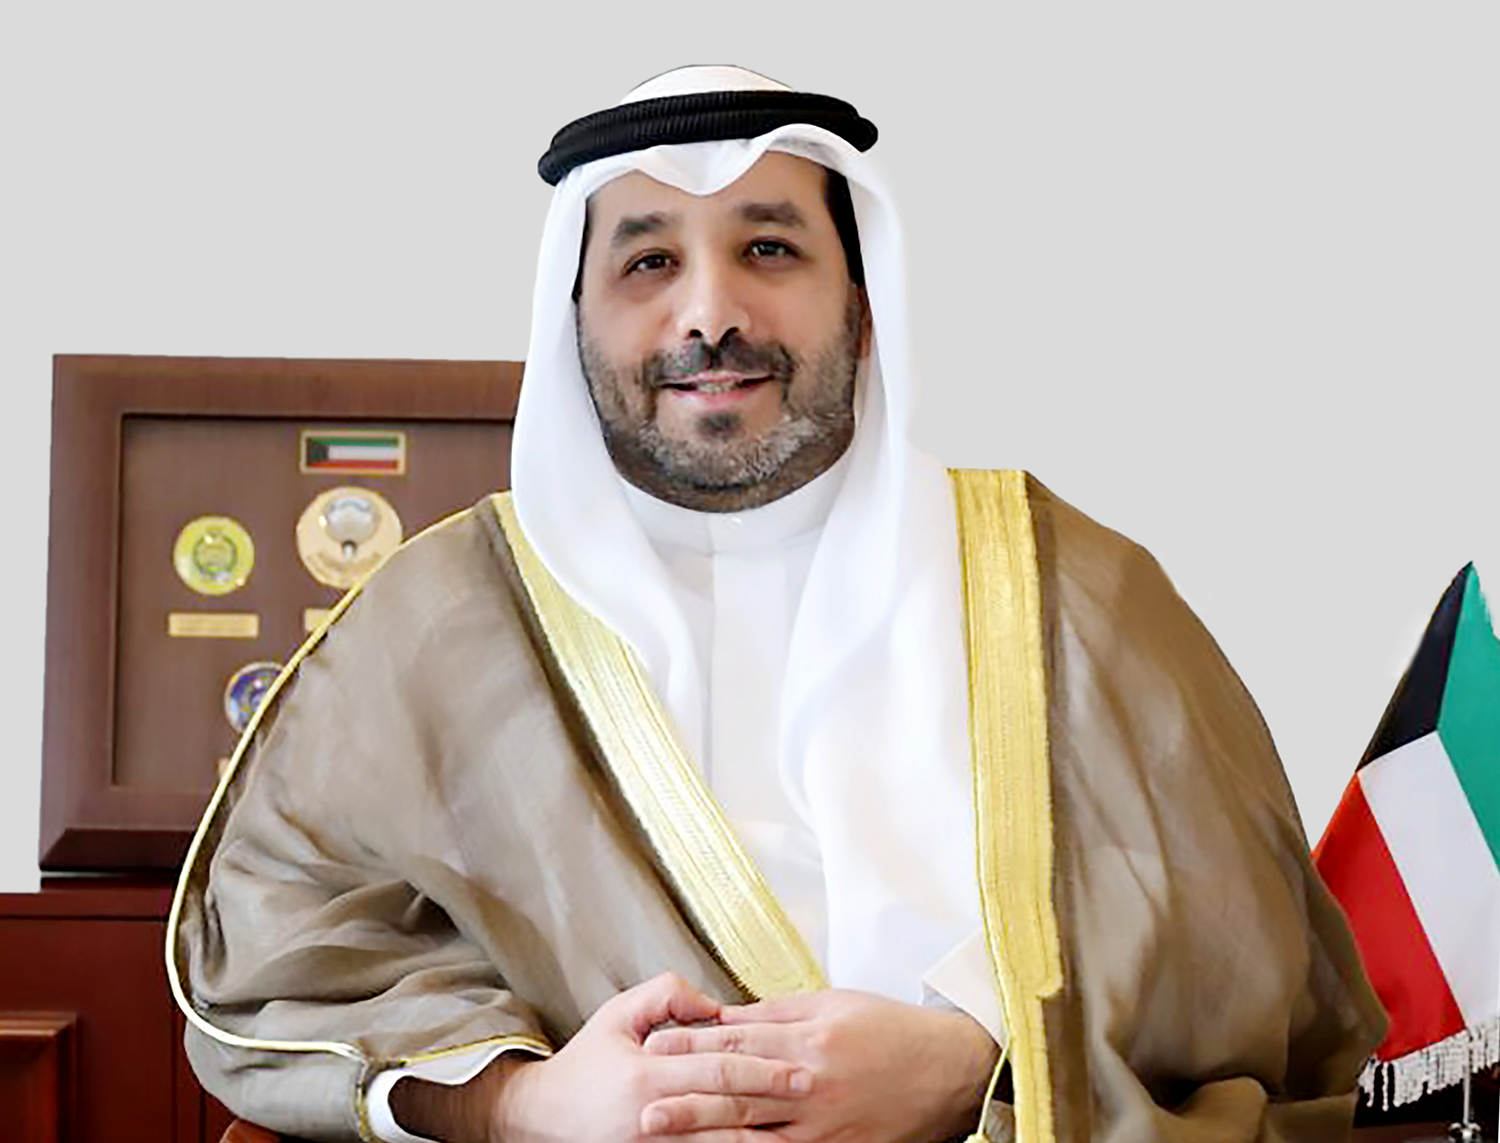 The State of Kuwait Ambassador to Saudi Arabia Sheikh Sabah Nasser Sabah Al-Ahmad Al-Jaber Al-Sabah 